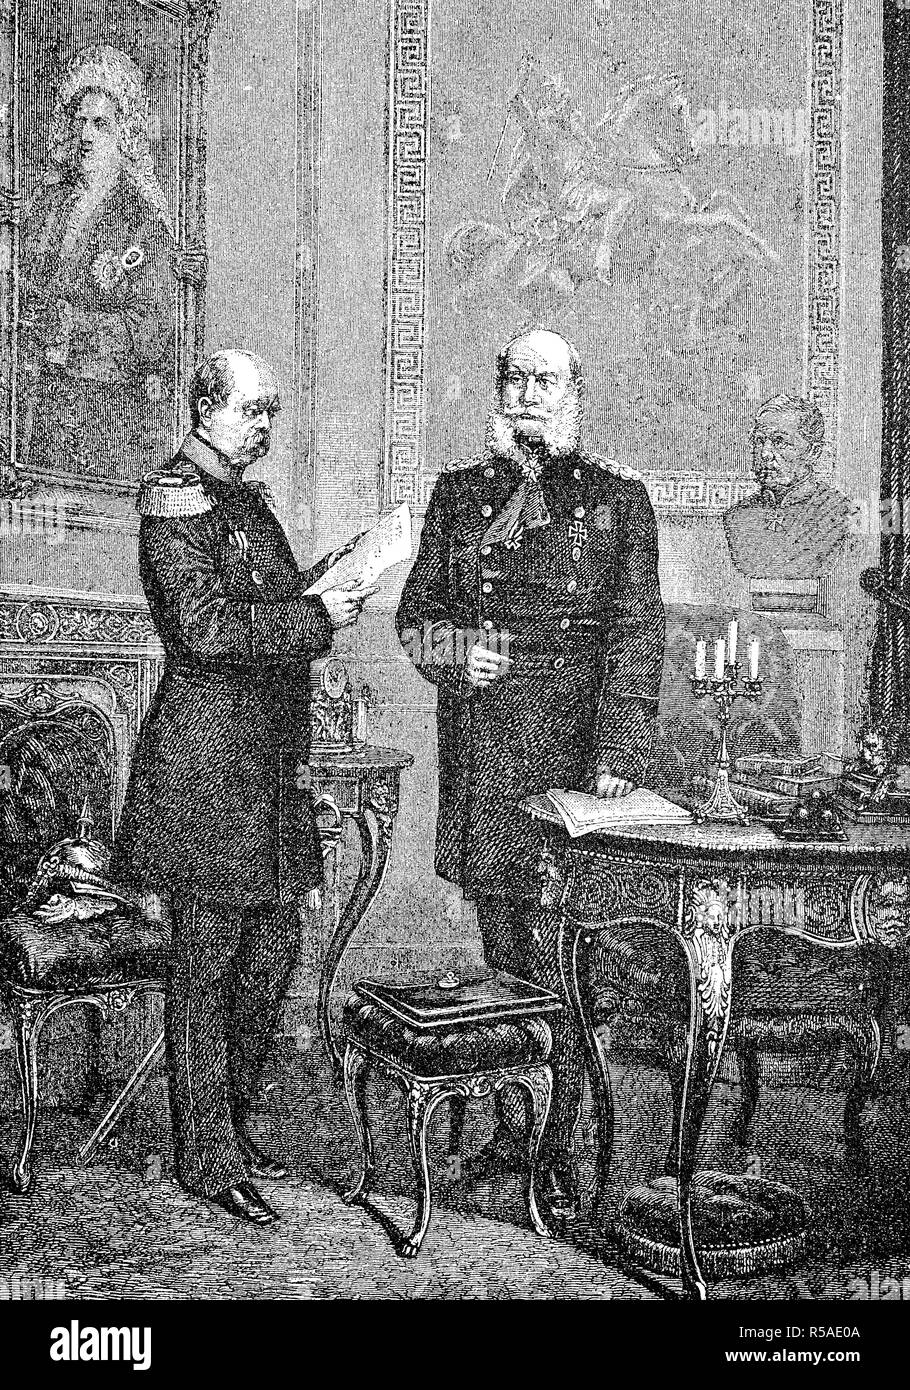 El emperador y su canciller, Guillermo I o Wilhelm I, su nombre completo es William Frederick Louis de Hohenzollern, Rey de Prusia. Foto de stock